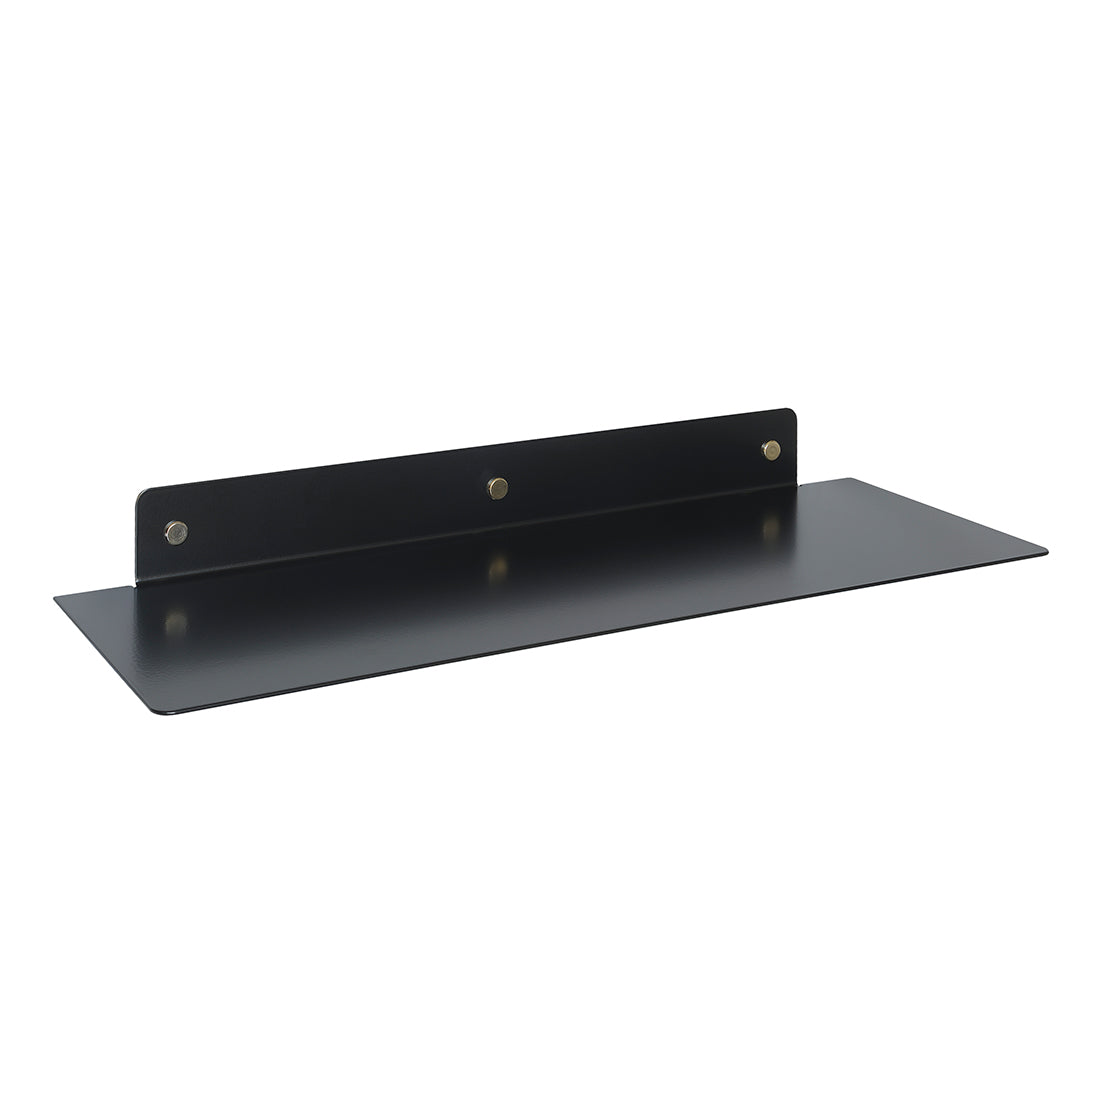 Curve metal shelf in black - 60 cm